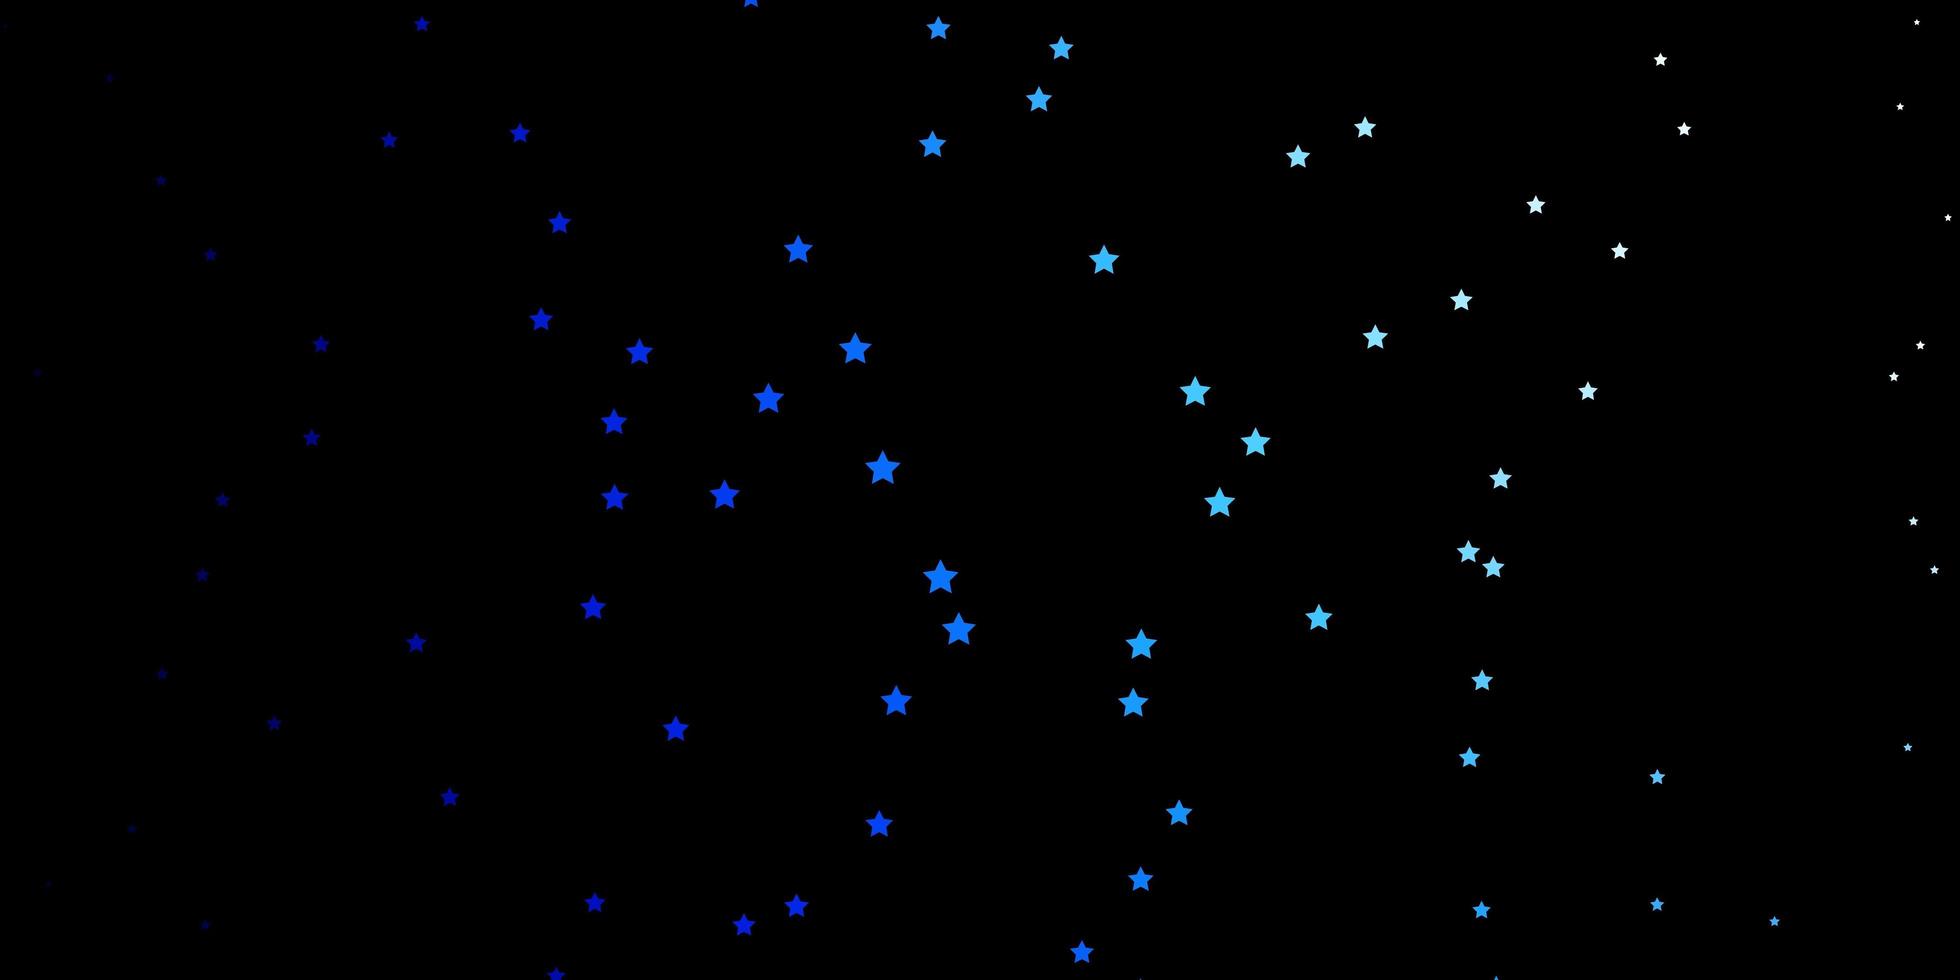 texture vecteur bleu foncé avec de belles étoiles illustration décorative avec des étoiles sur le thème du modèle abstrait pour les téléphones portables